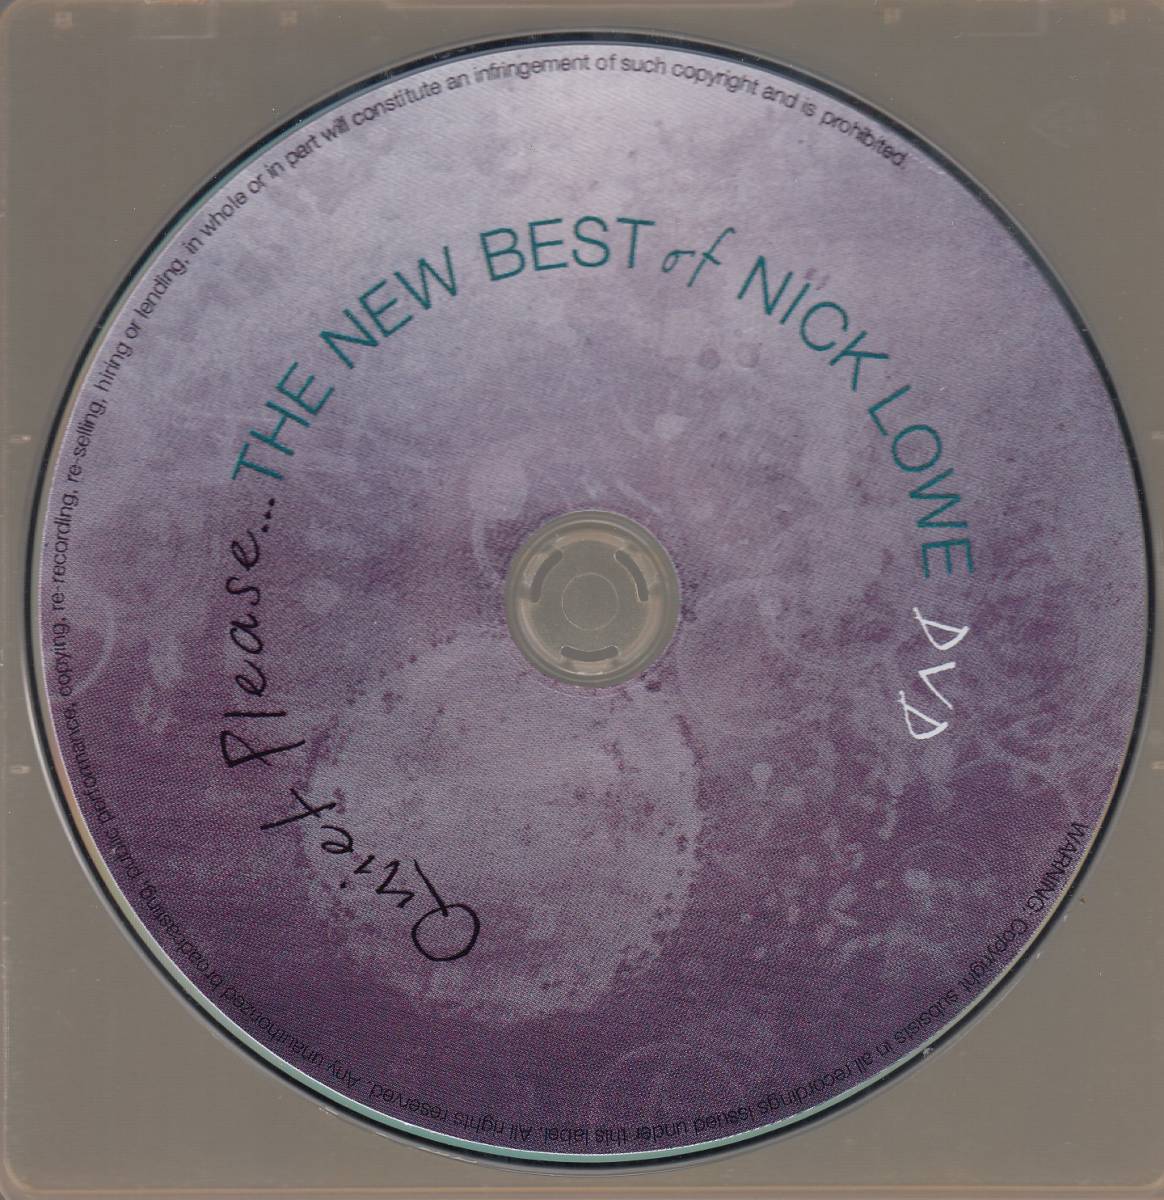  транспорт nik* low Quiet Please - The New Best Of Nick Lowe 2CD+DVD* стандарт номер #YEP-2622* бесплатная доставка # быстрое решение * переговоры иметь 